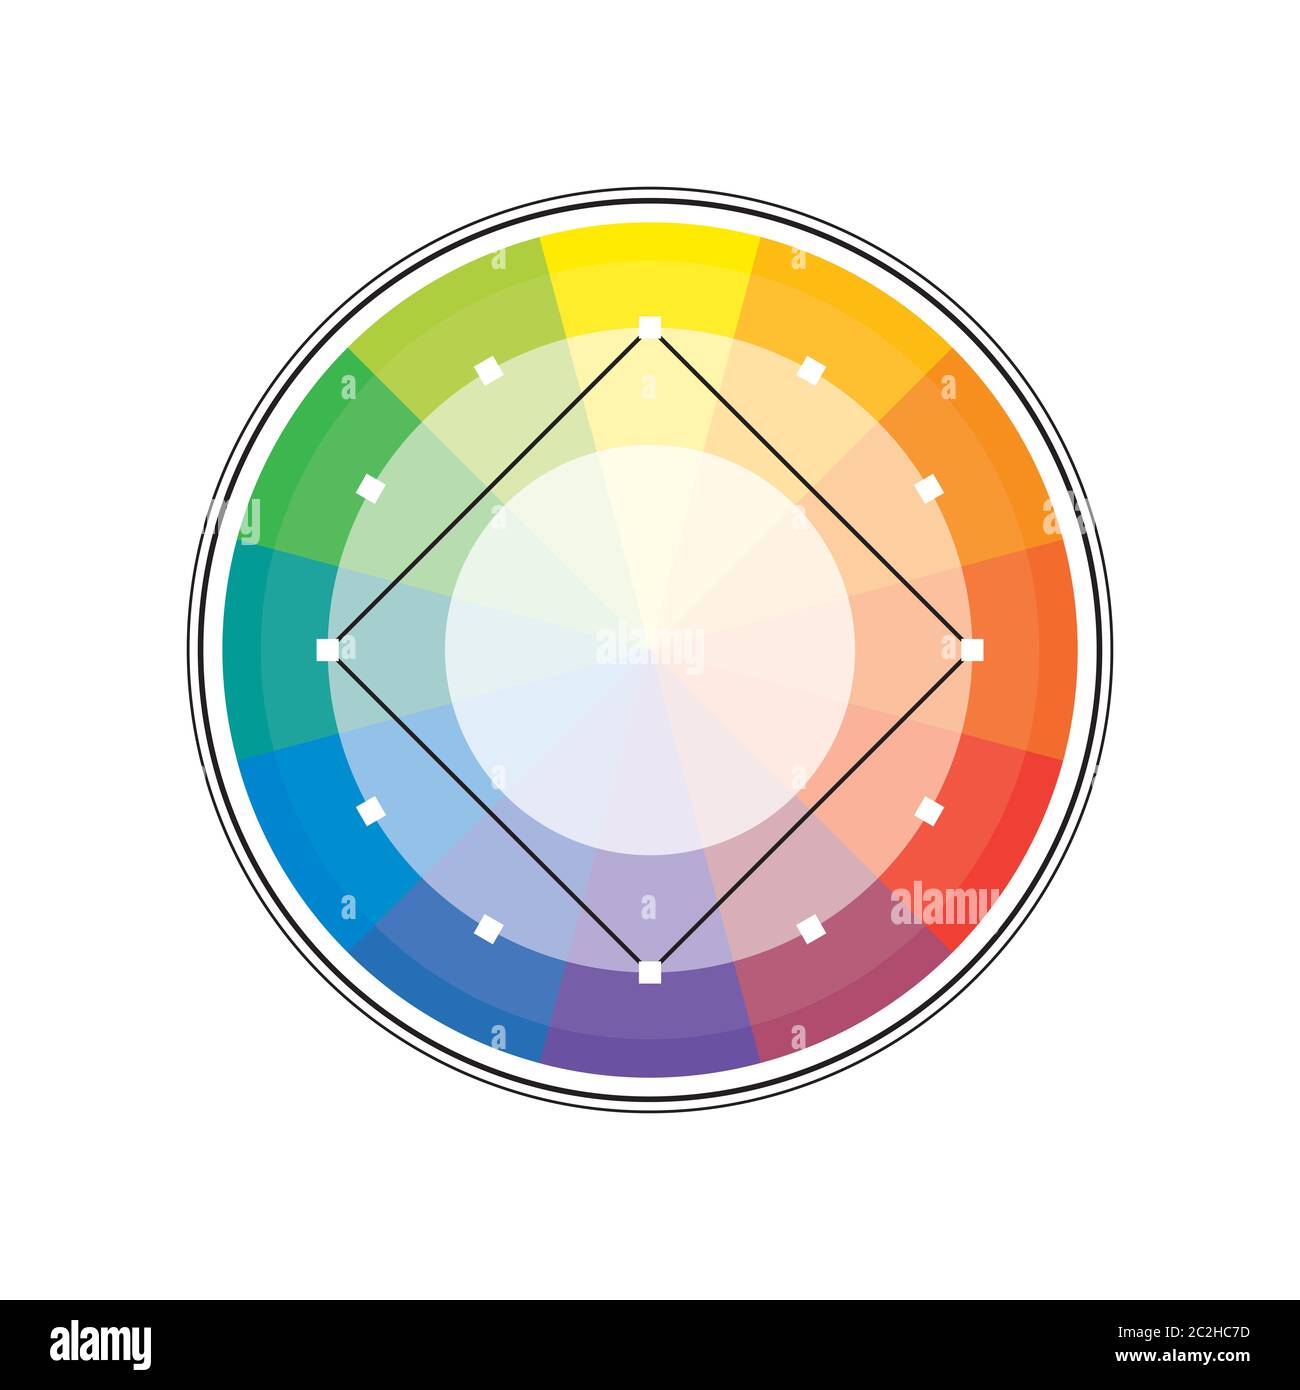 Arc-en-ciel multicolore polychrome versicolor spectrale cercle de 12 segments. La palette de couleur harmonique spectrale du peintre. Banque D'Images